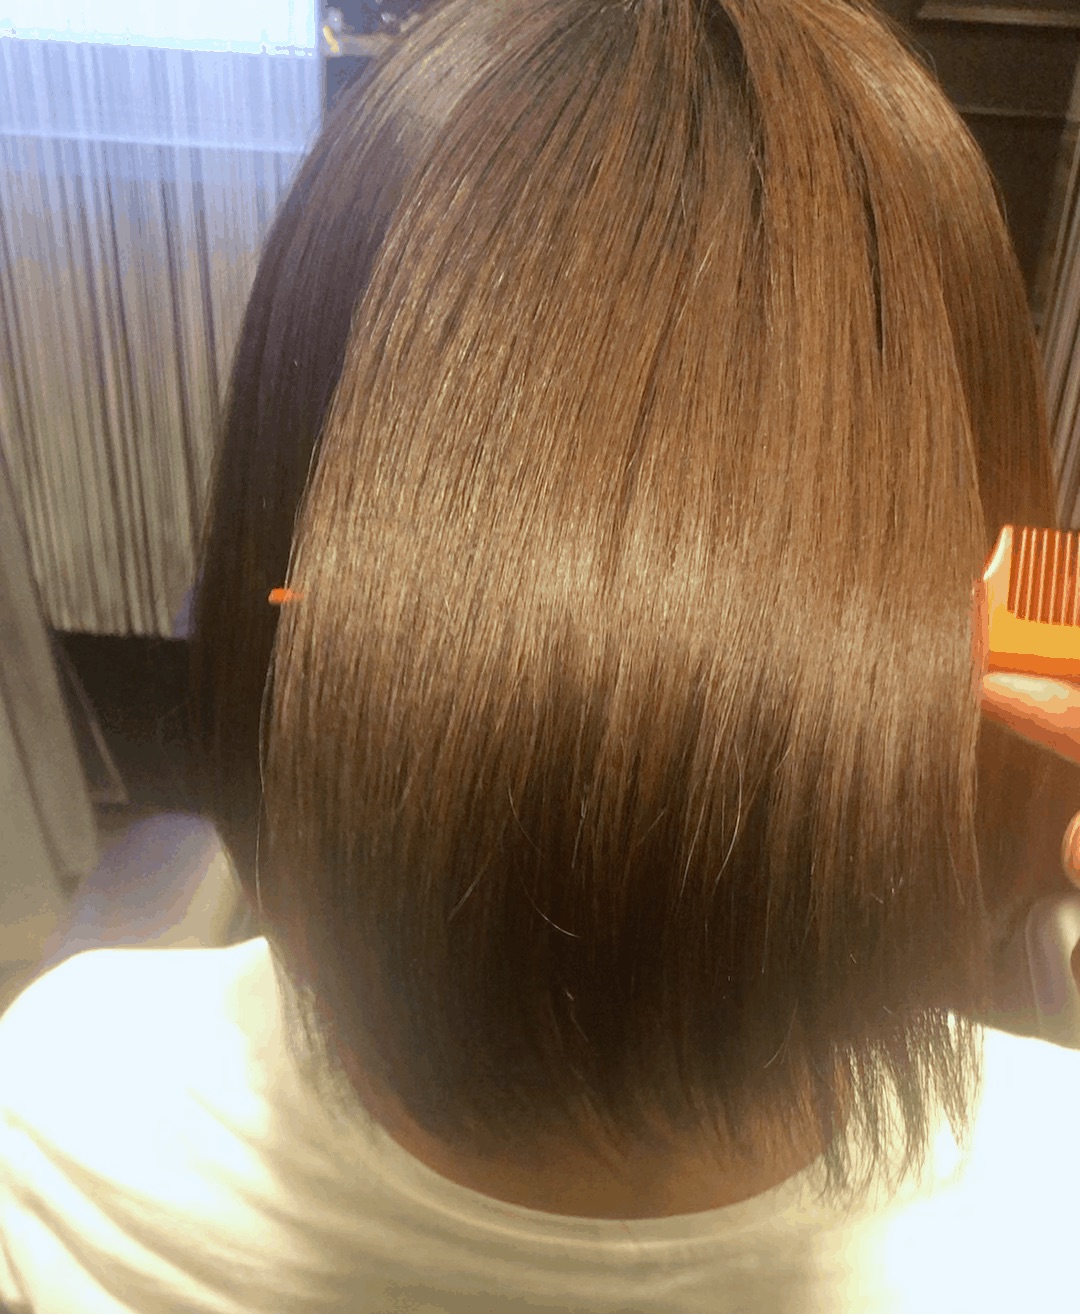 神戸 三宮 ヨガアイアムの真由さんの髪を髪質改善ストレートで美髪にしました 神戸 三宮 美容室 Luce ルーチェ の美容師 山内 茂blogs